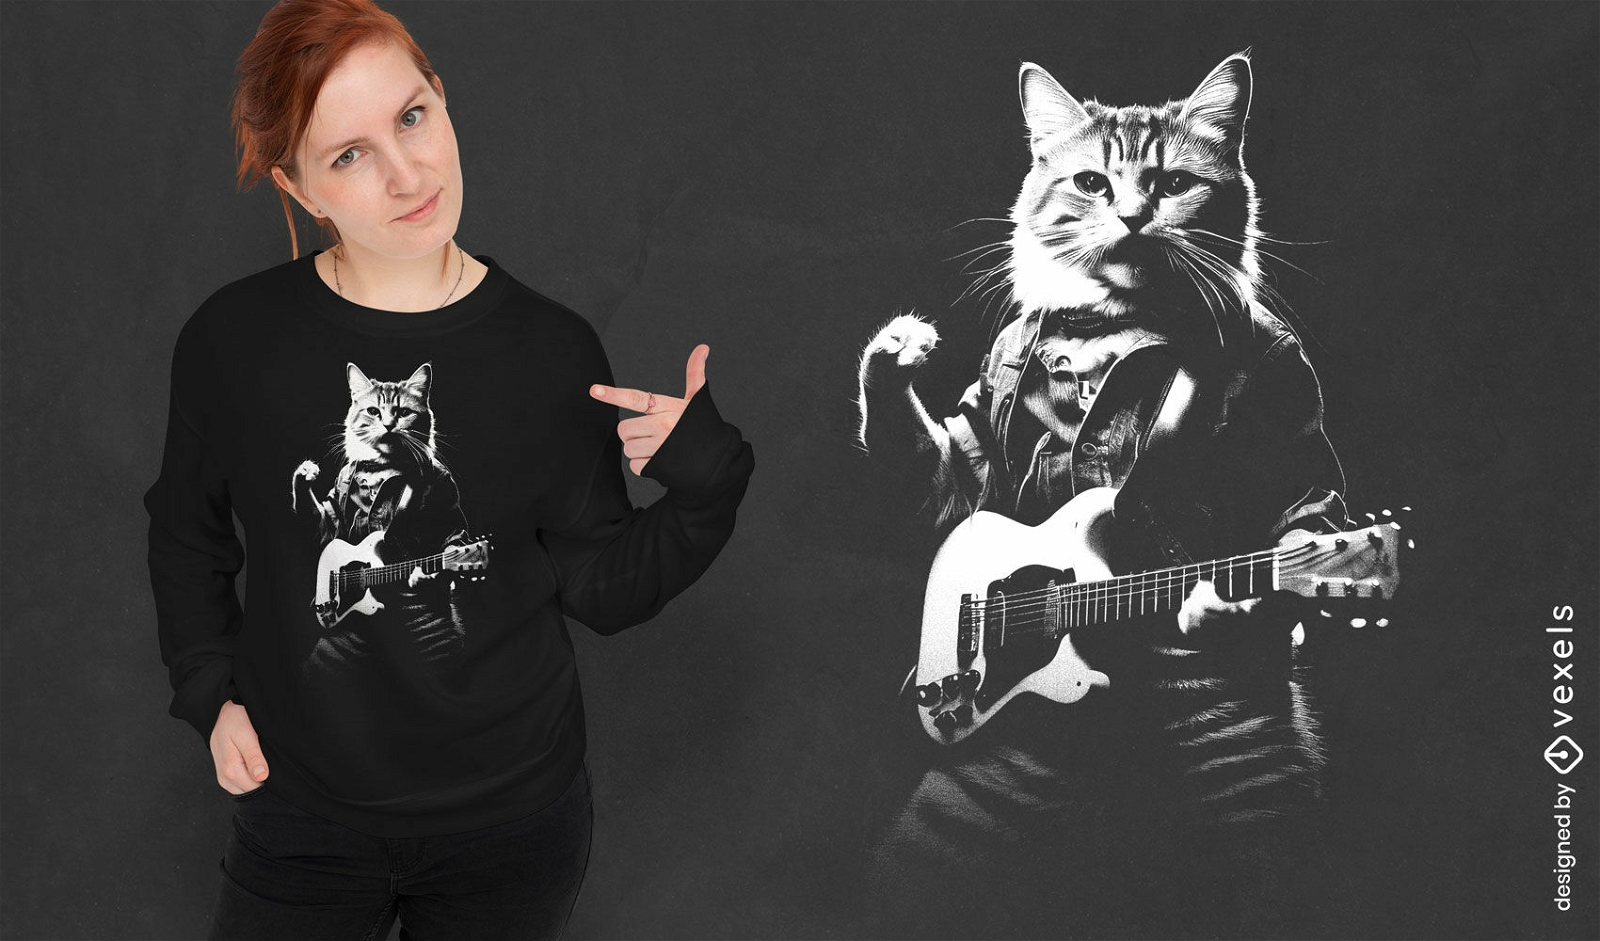 Guitar playing cat t-shirt design